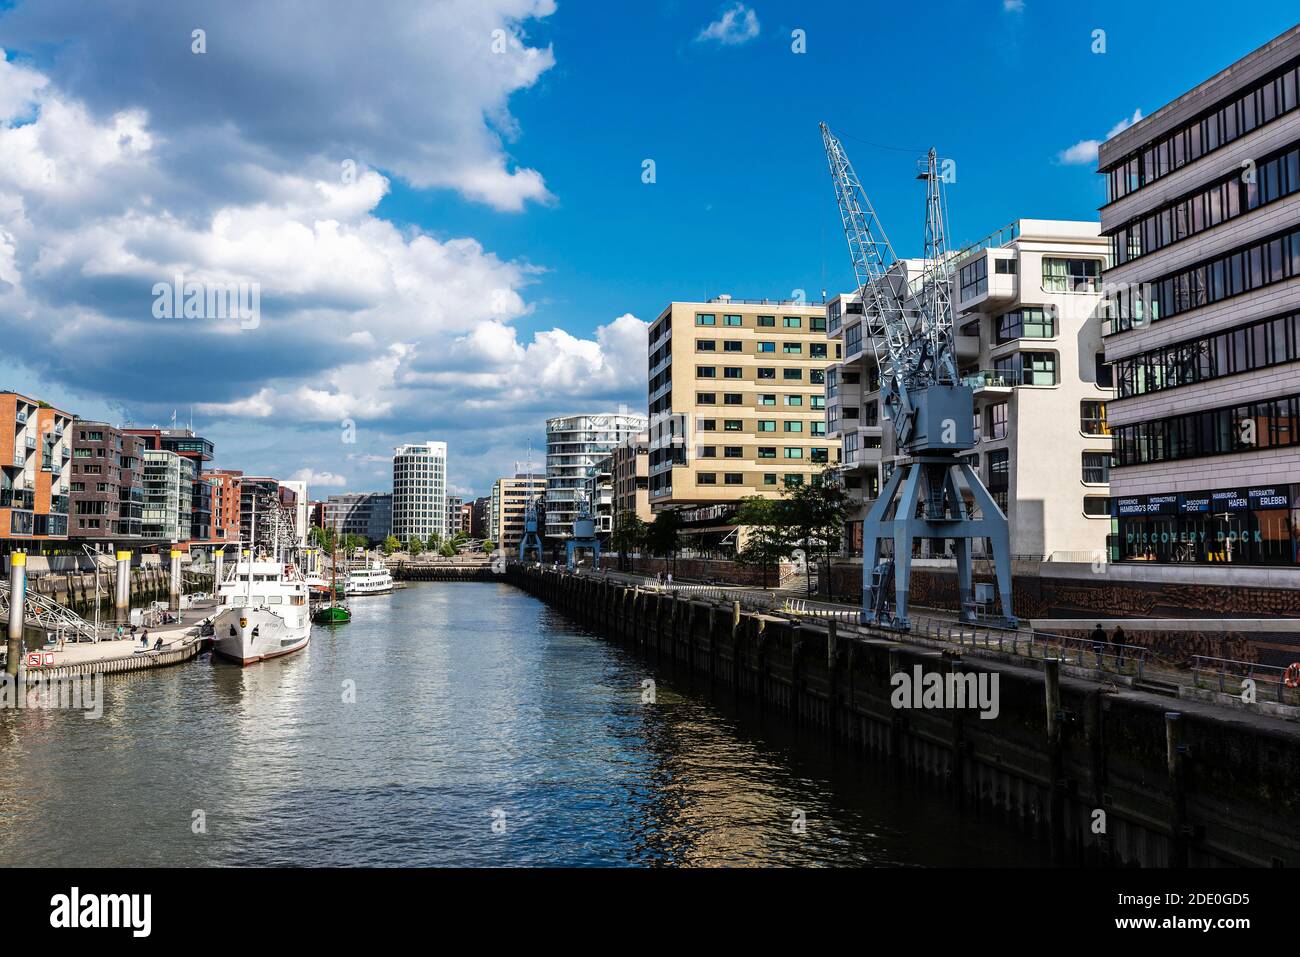 Hamburg, Deutschland - 21. August 2019: Moderne Gebäude und eine Anlegestelle mit Booten, Kräne und Menschen in der HafenCity, Hamburg, Deutschland Stockfoto